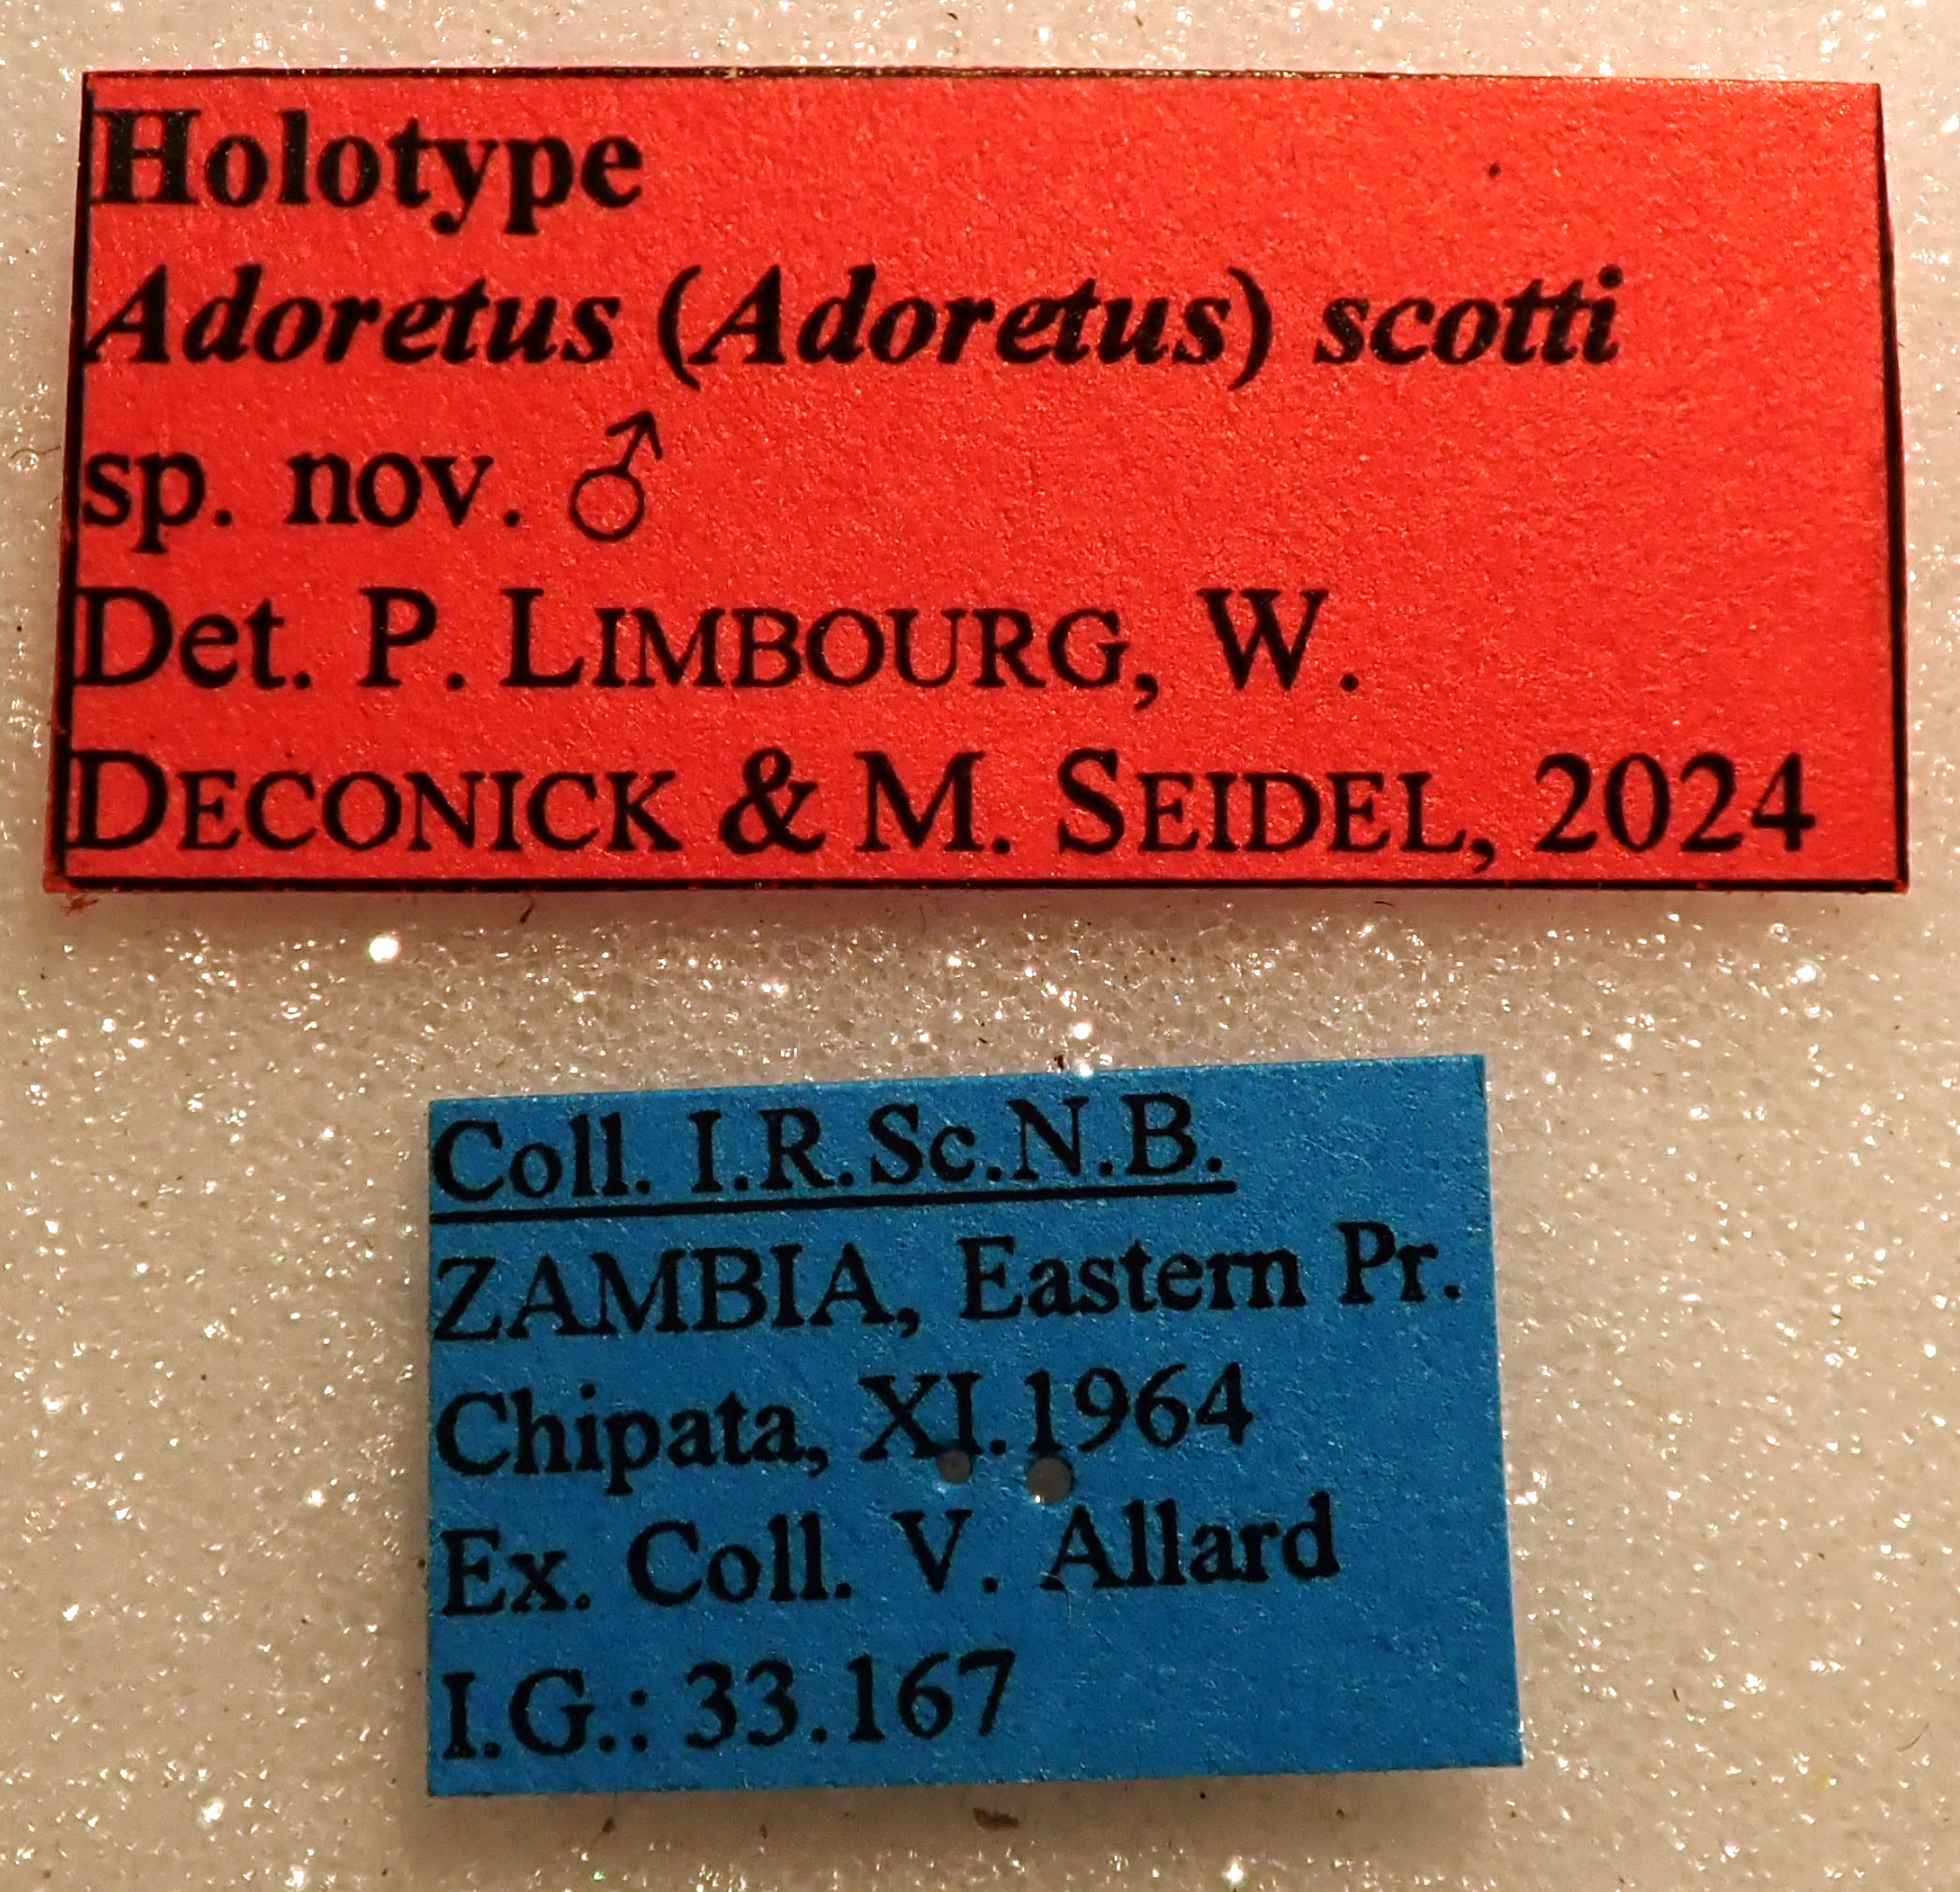 Adoretus (Adoretus) scotti Ht labels